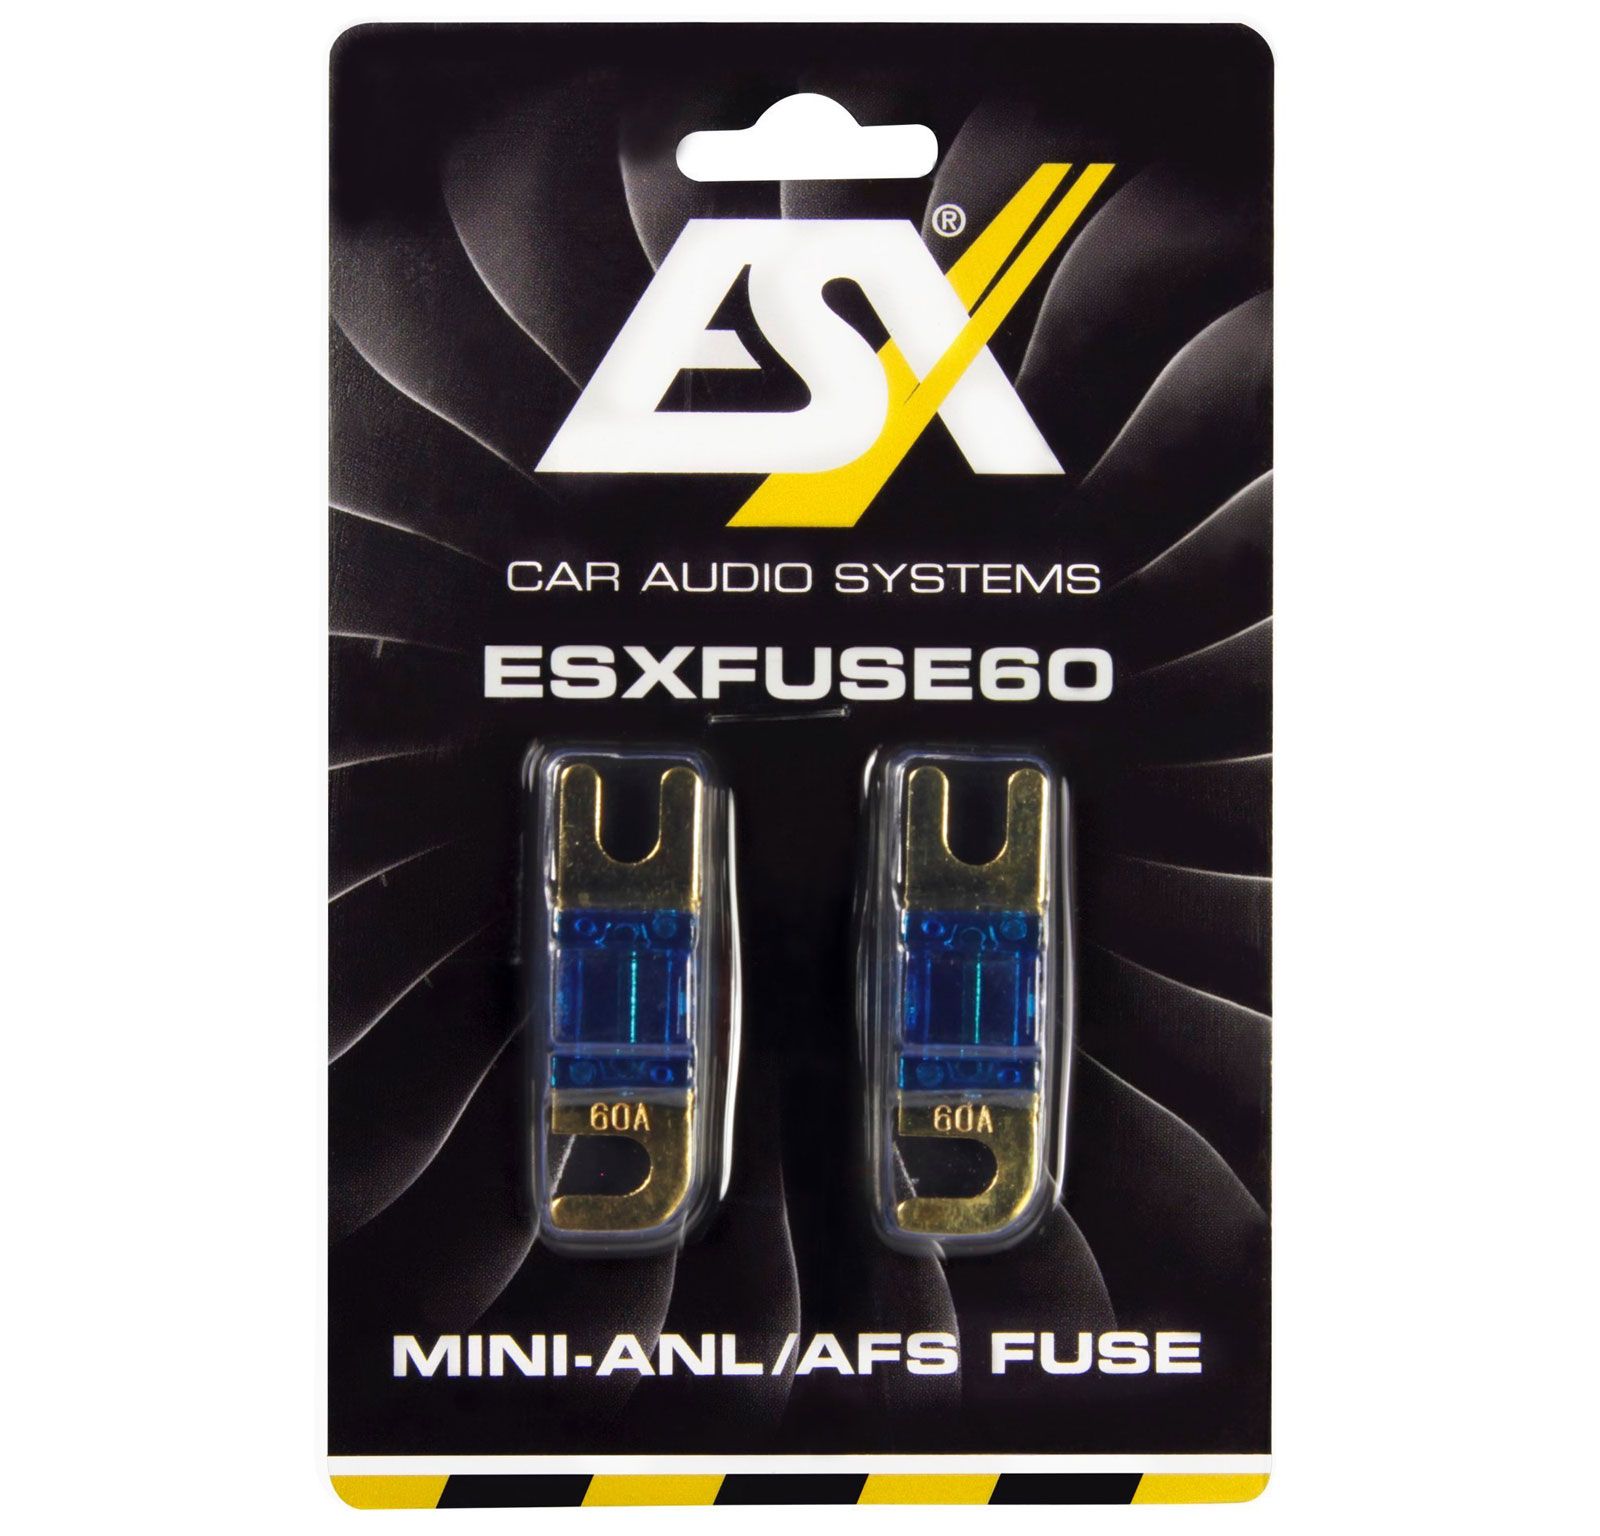 ESX FUSE60 - Mini-ANL Sicherung, 60 A